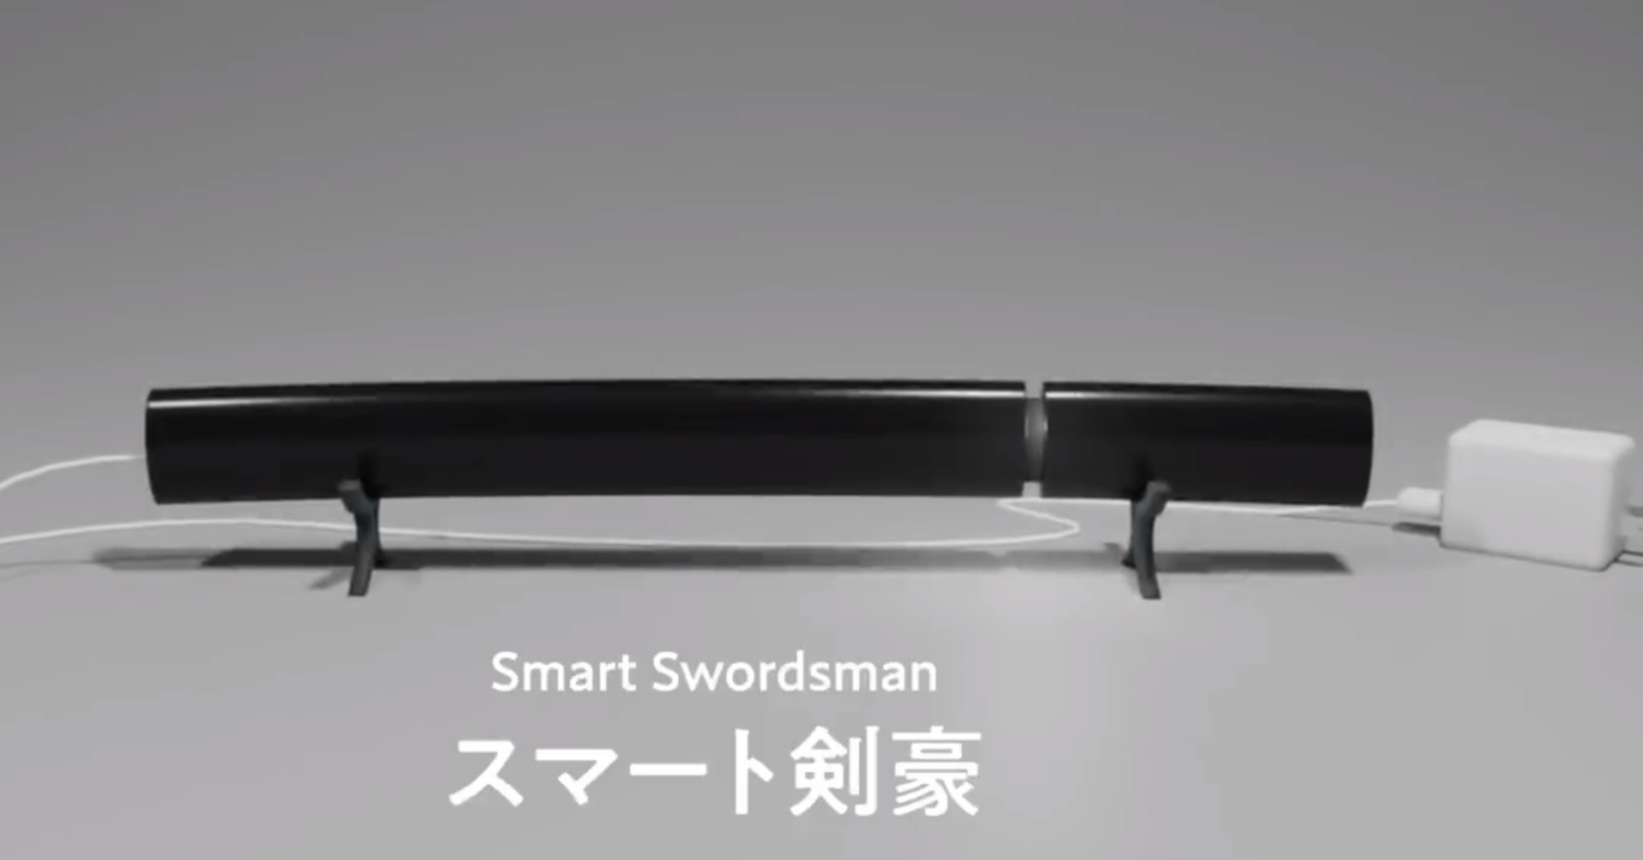 照片中提到了Smart Swordsman、スマート剣豪，包含了長椅、超細纖維沙發、超細纖維沙發、沙發、德綱